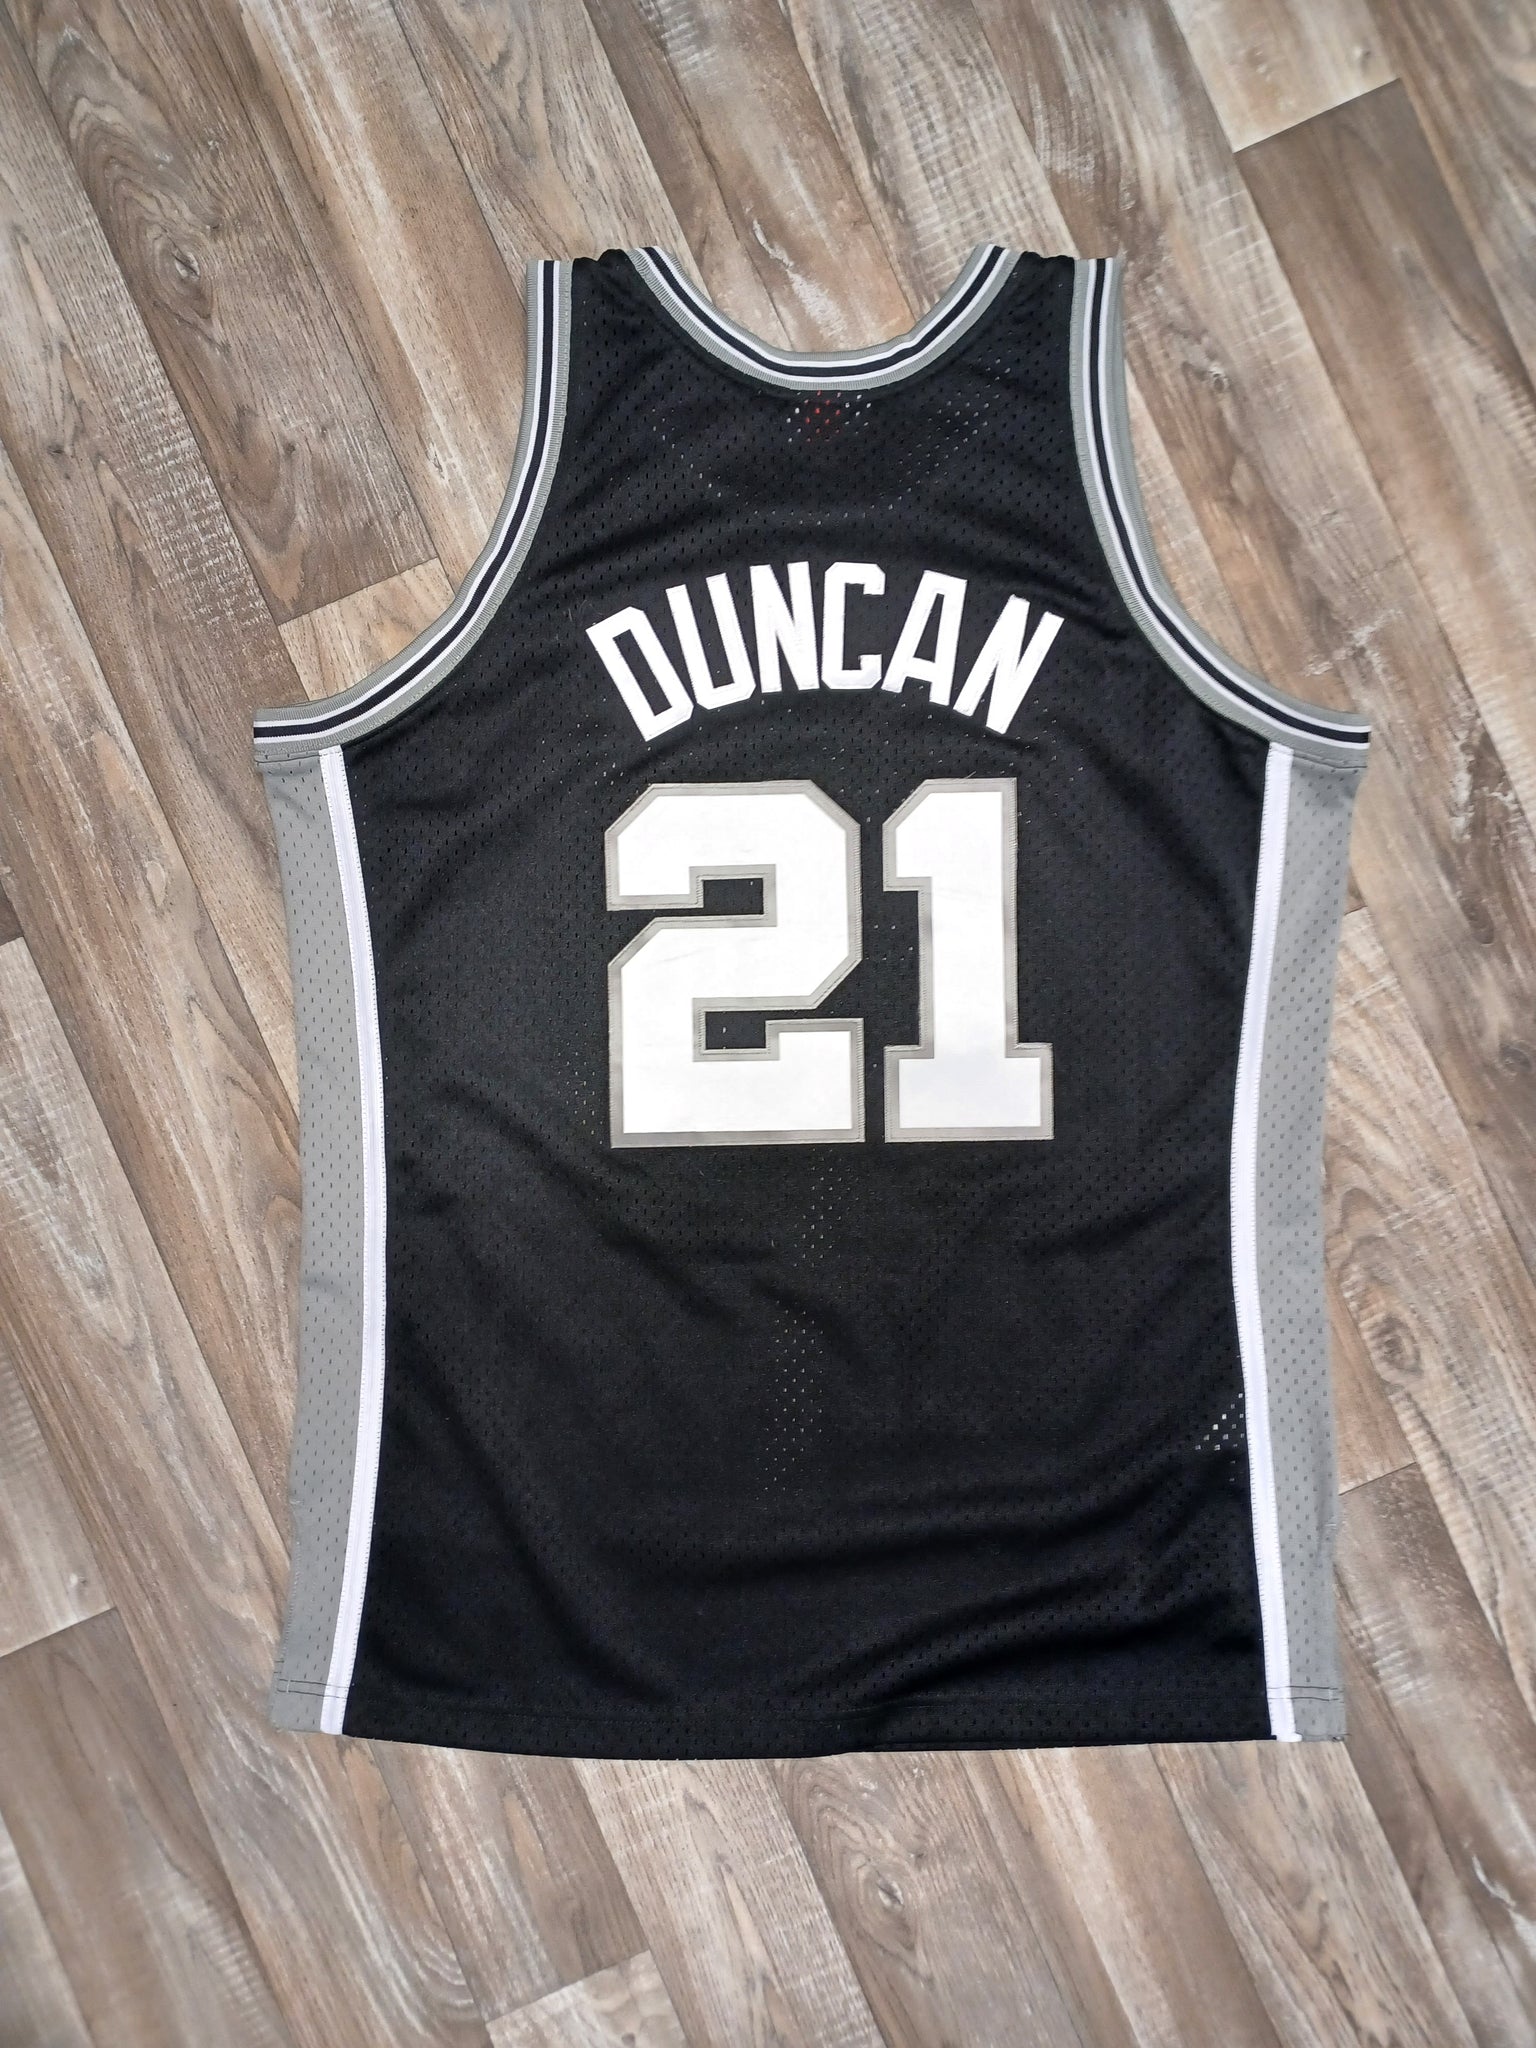 DUNCAN#21 Spurs Black NBA Jersey S-XXL